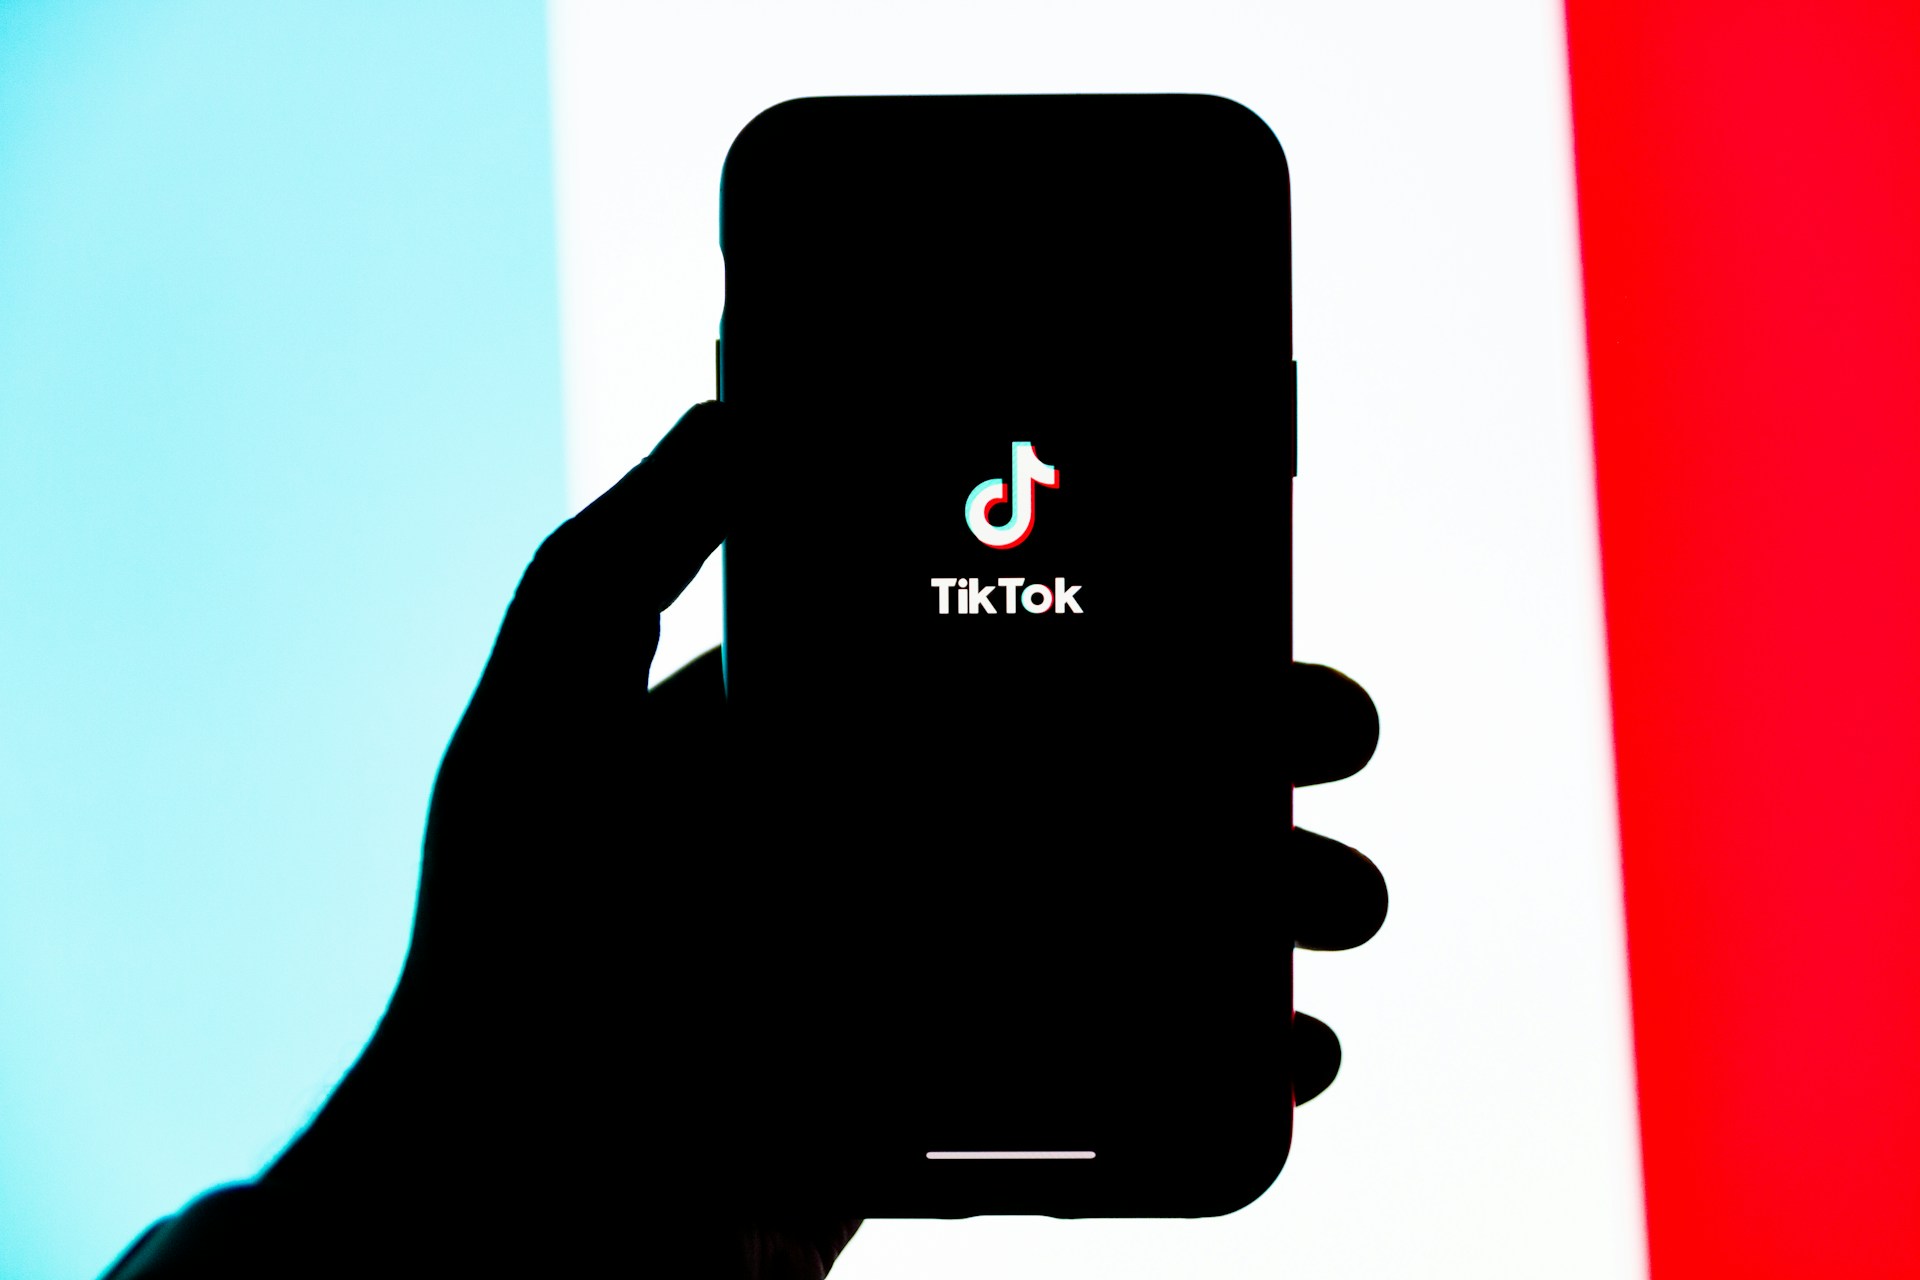 Das eigentliche Problem mit TikTok ist nicht China, sondern die Datenerhebungspraktiken von TikTok und der mangelnde Schutz der Privatsphäre der Nutzer.